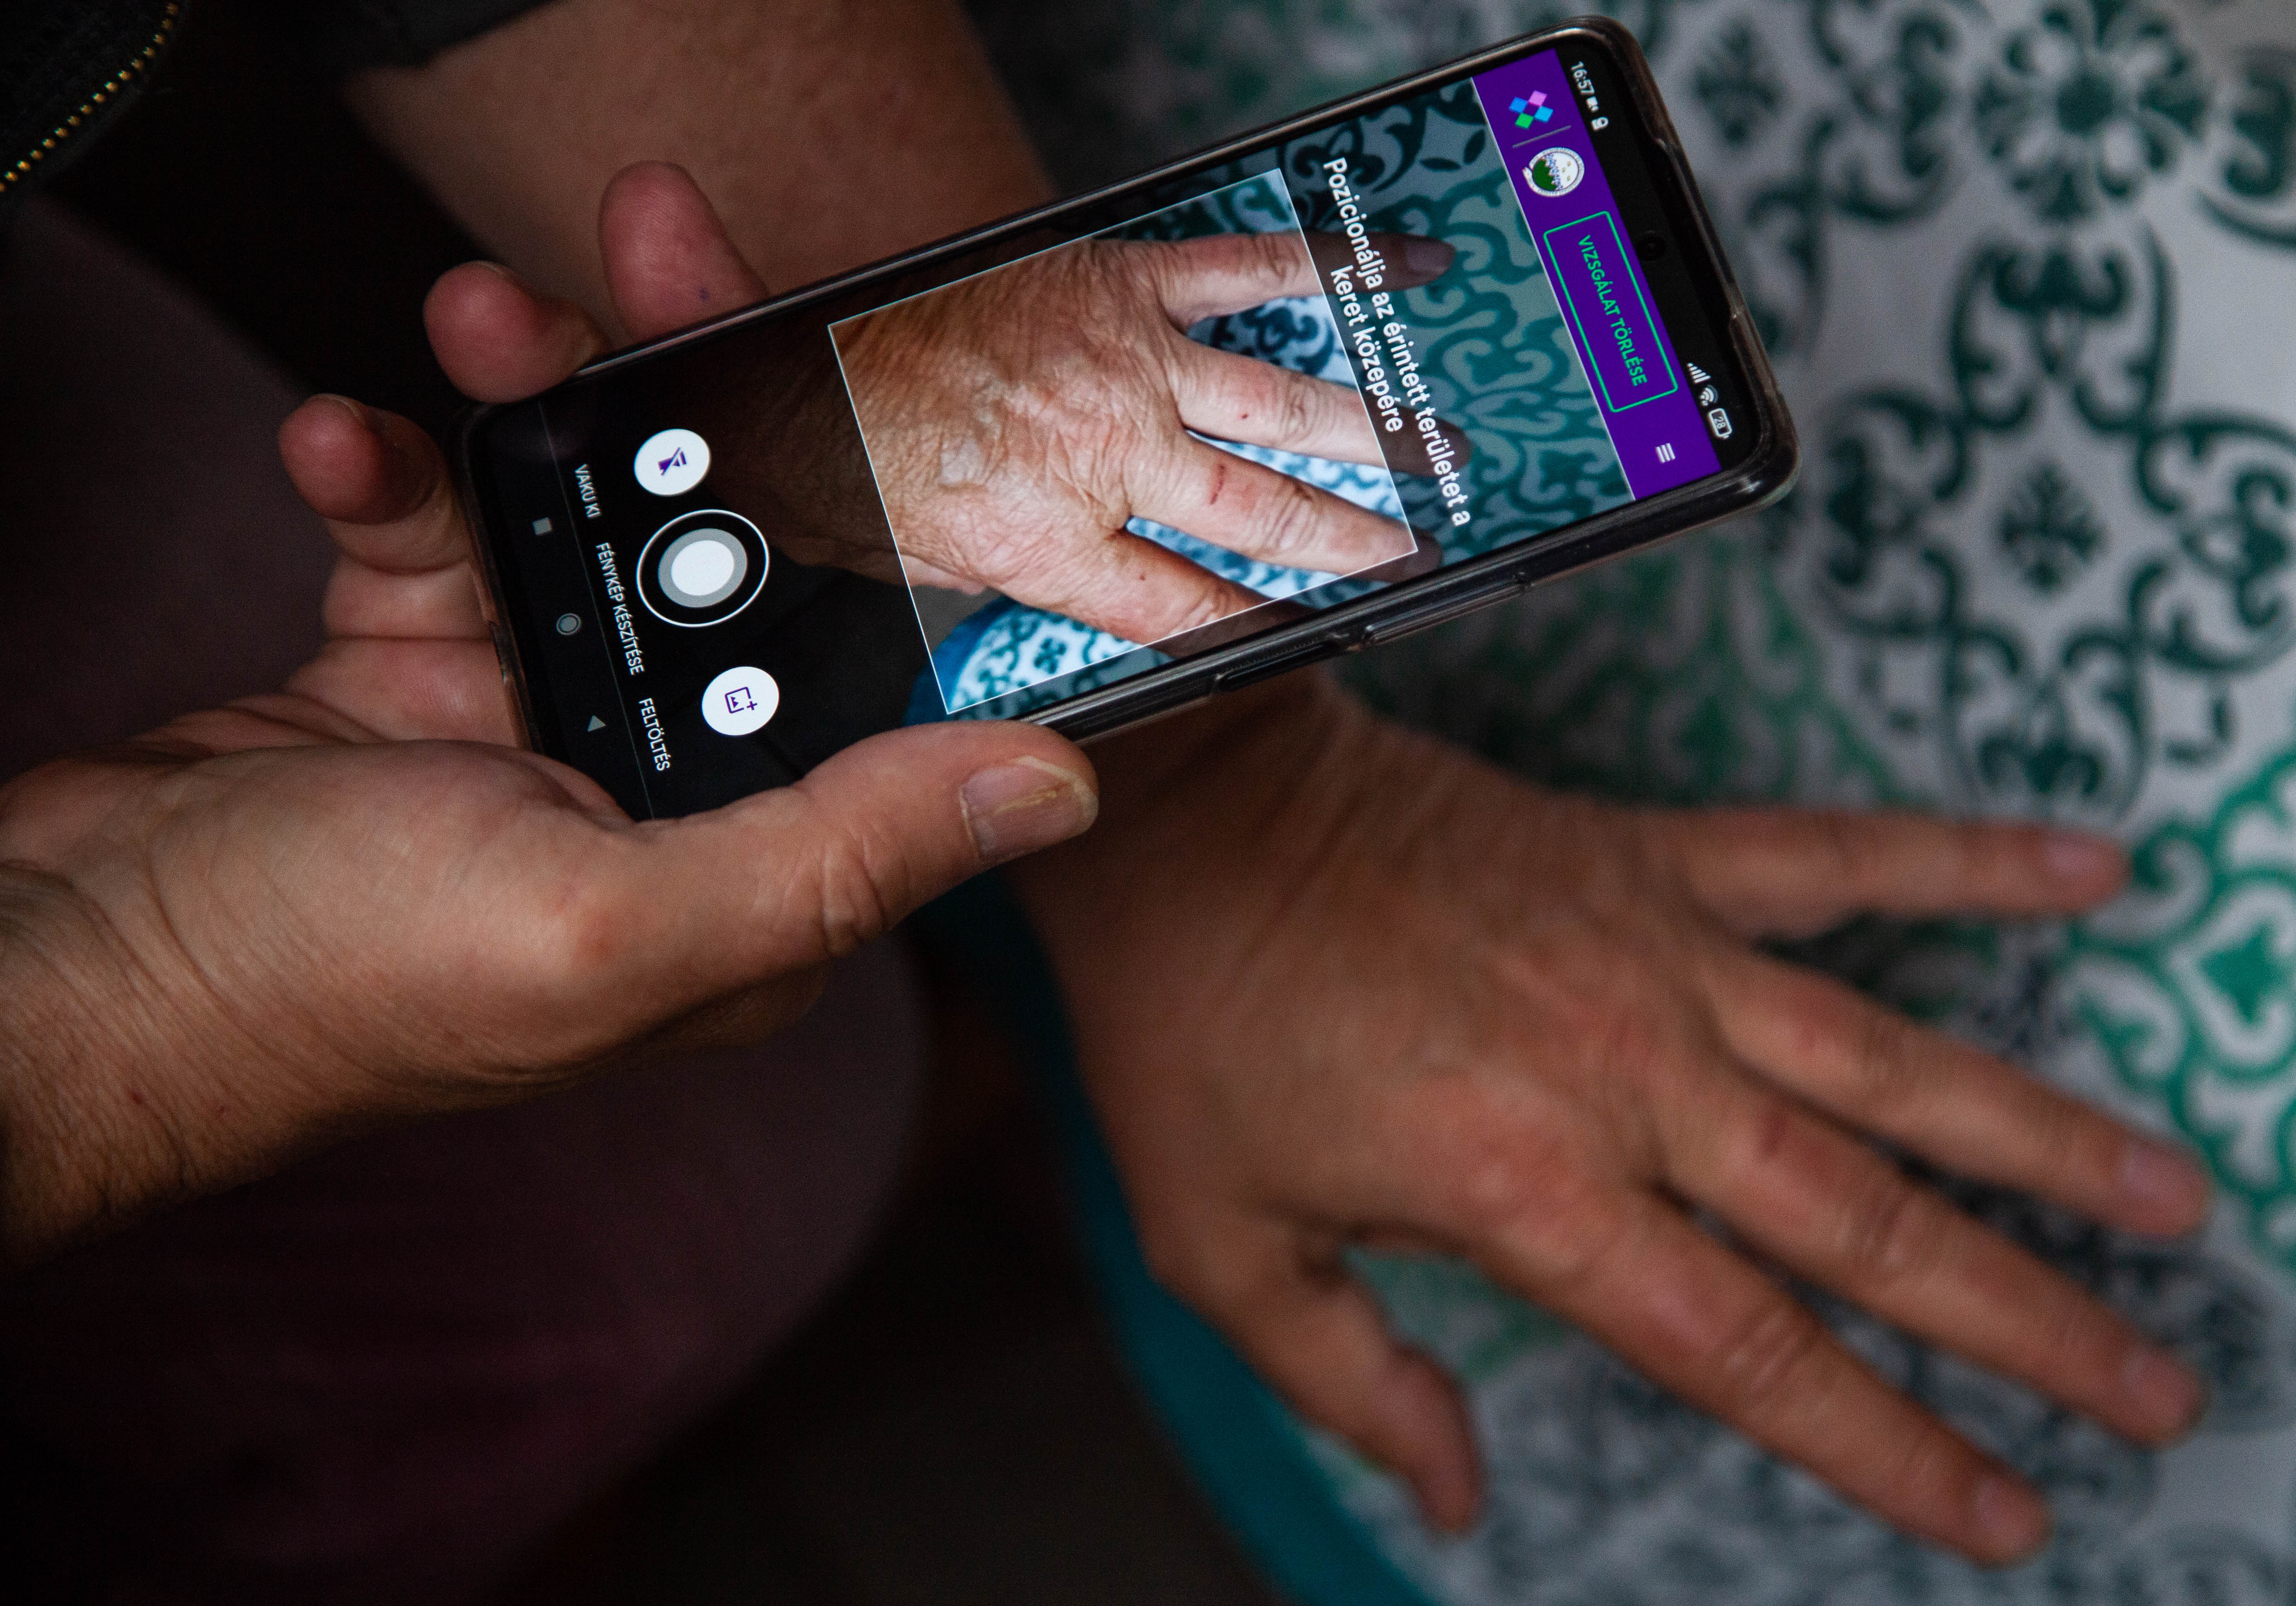 Bőrgyógyászati diagnózis hajléktalan embereknek, mobiltelefonnal készített fotók alapján